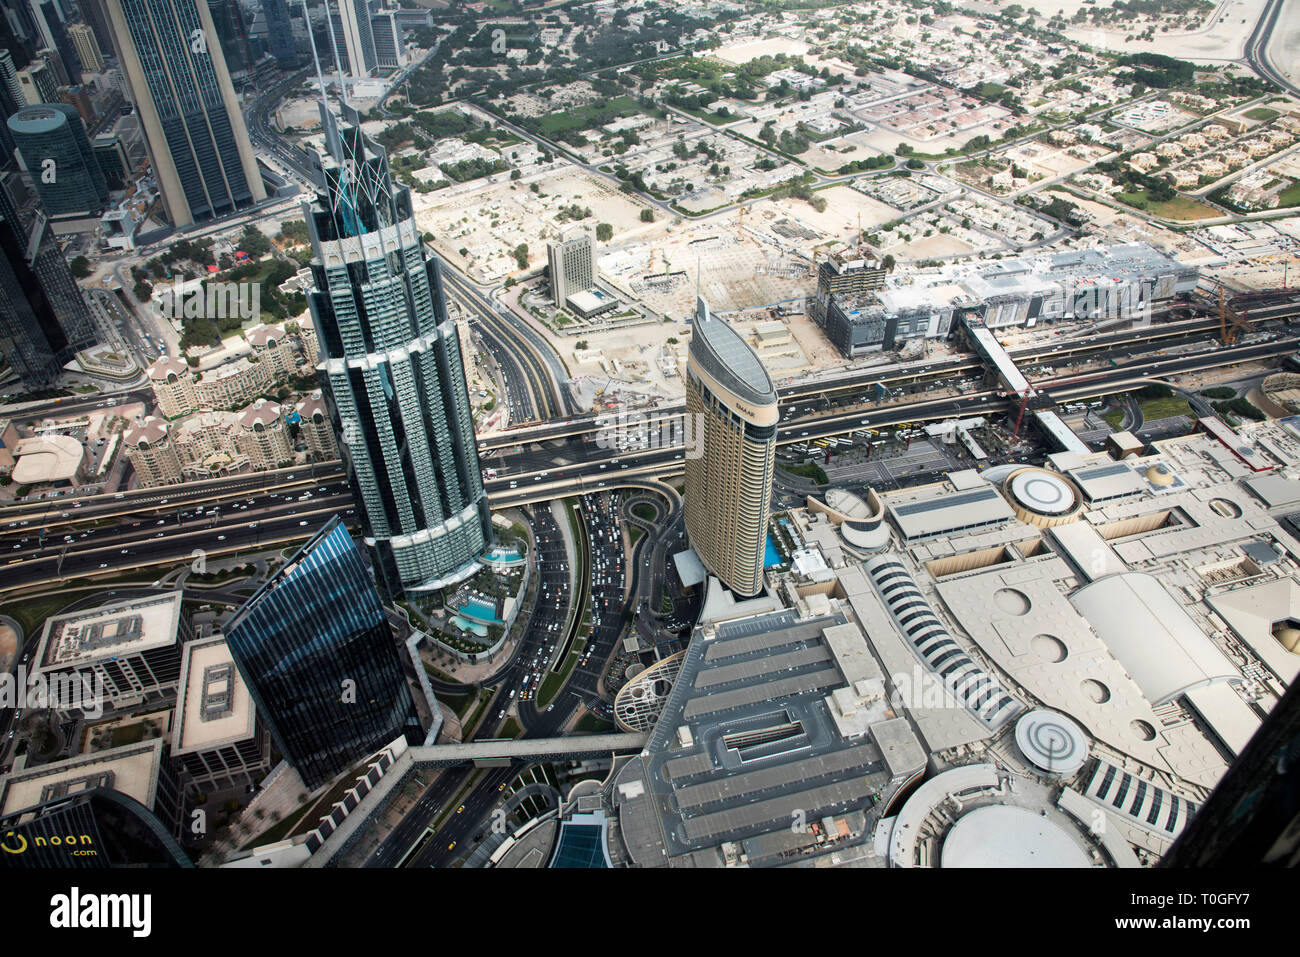 Blick auf die Gebäude ab 124. Stockwerk des Burj Dubai, dem höchsten Gebäude der Welt, Dubai, UAE. Stockfoto